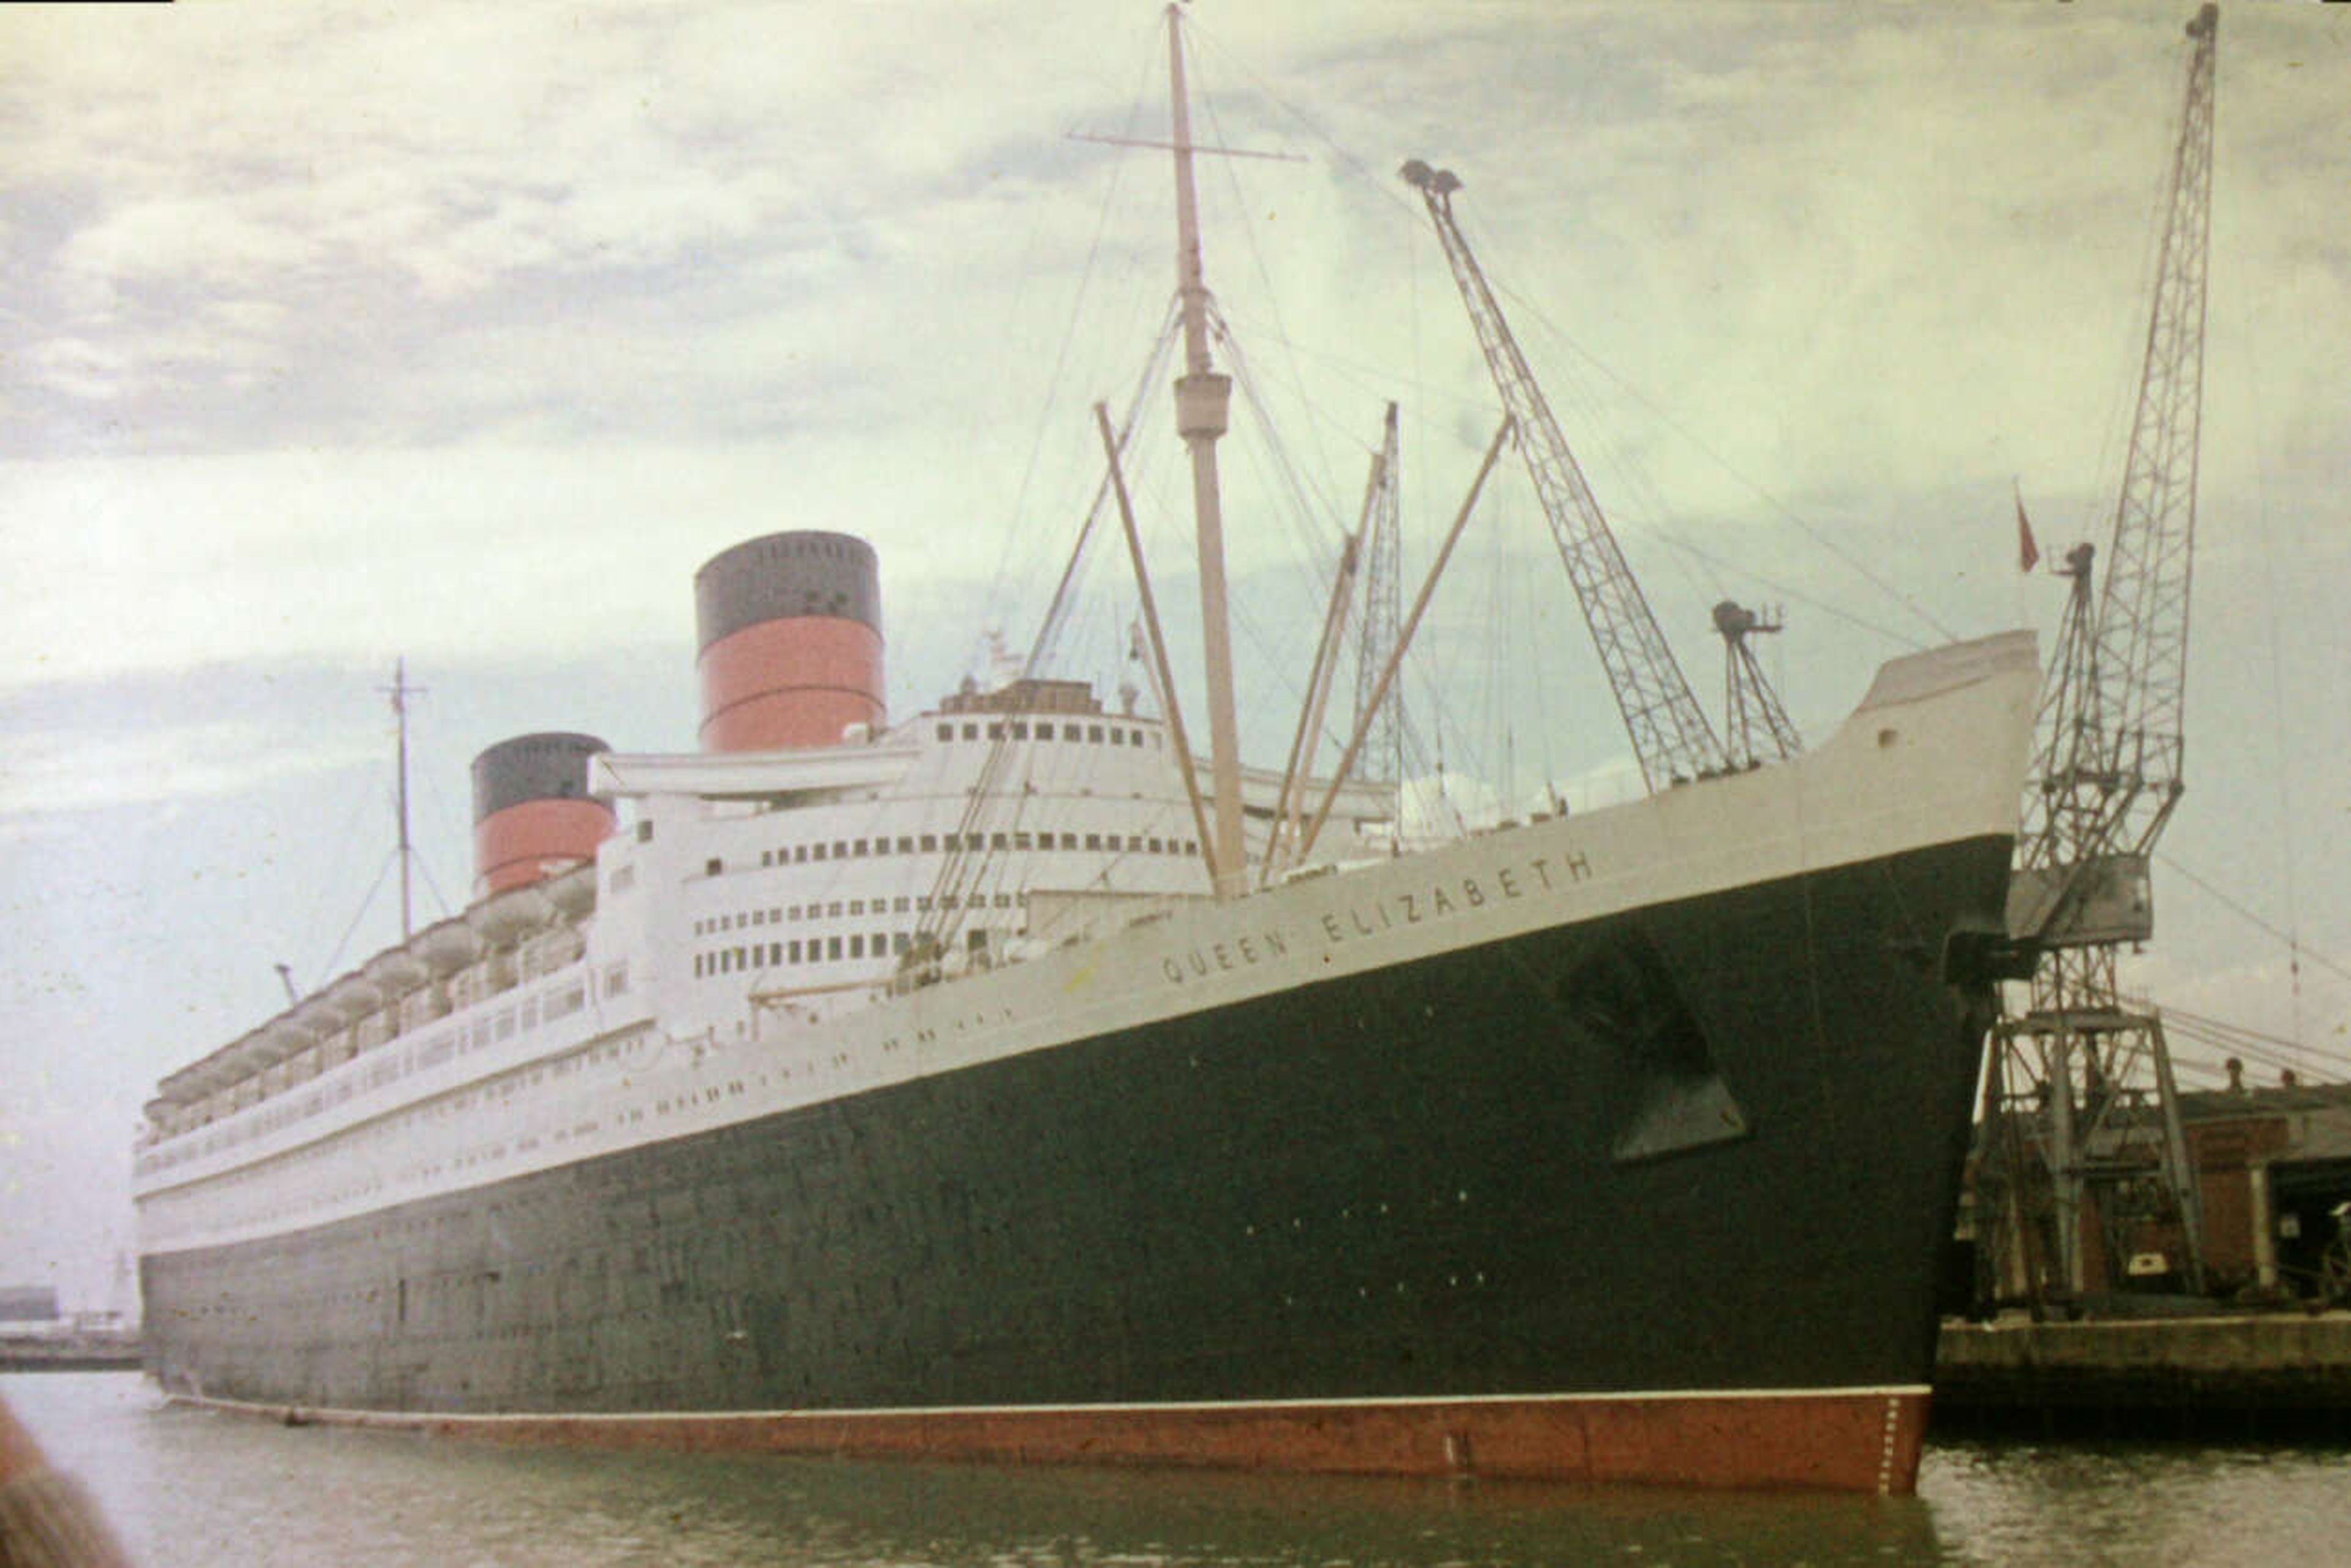 El Queen Elizabeth atracado en el puerto de Southampton, en agosto de 1960 - George John Edkins / Wikipedia.